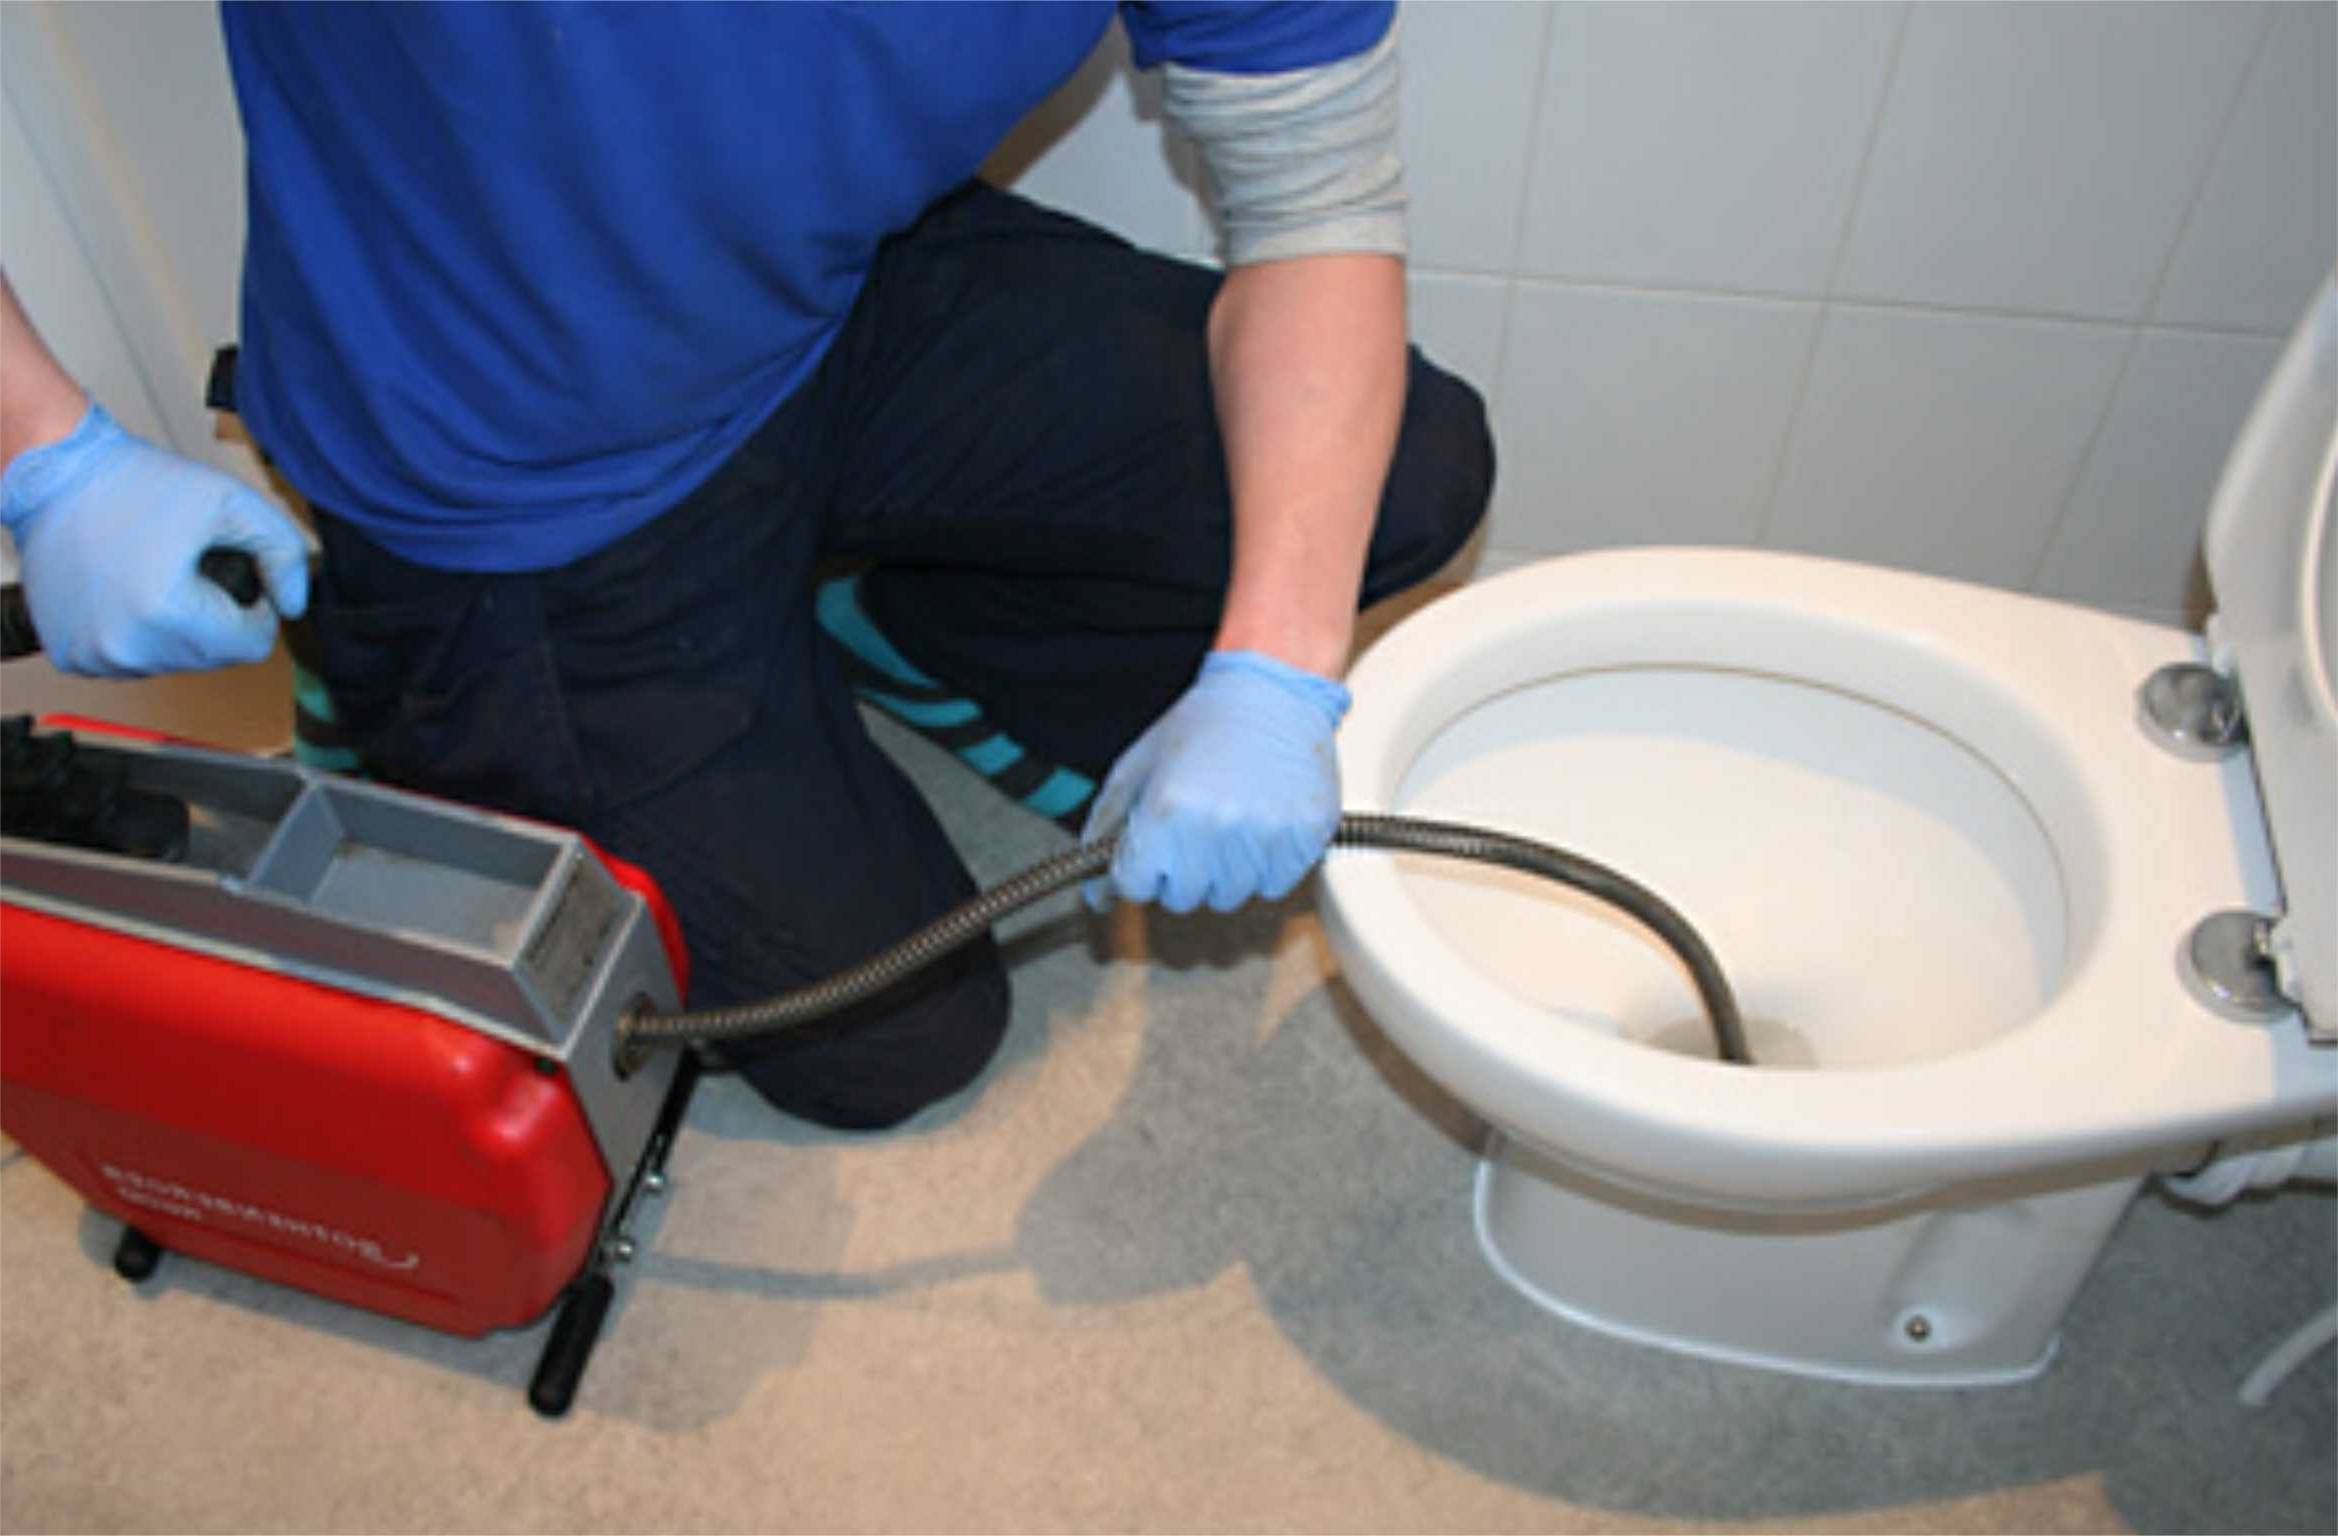 Как бороться с засорами в канализационных трубах: каким средством можно прочистить трубы, меры профилактики